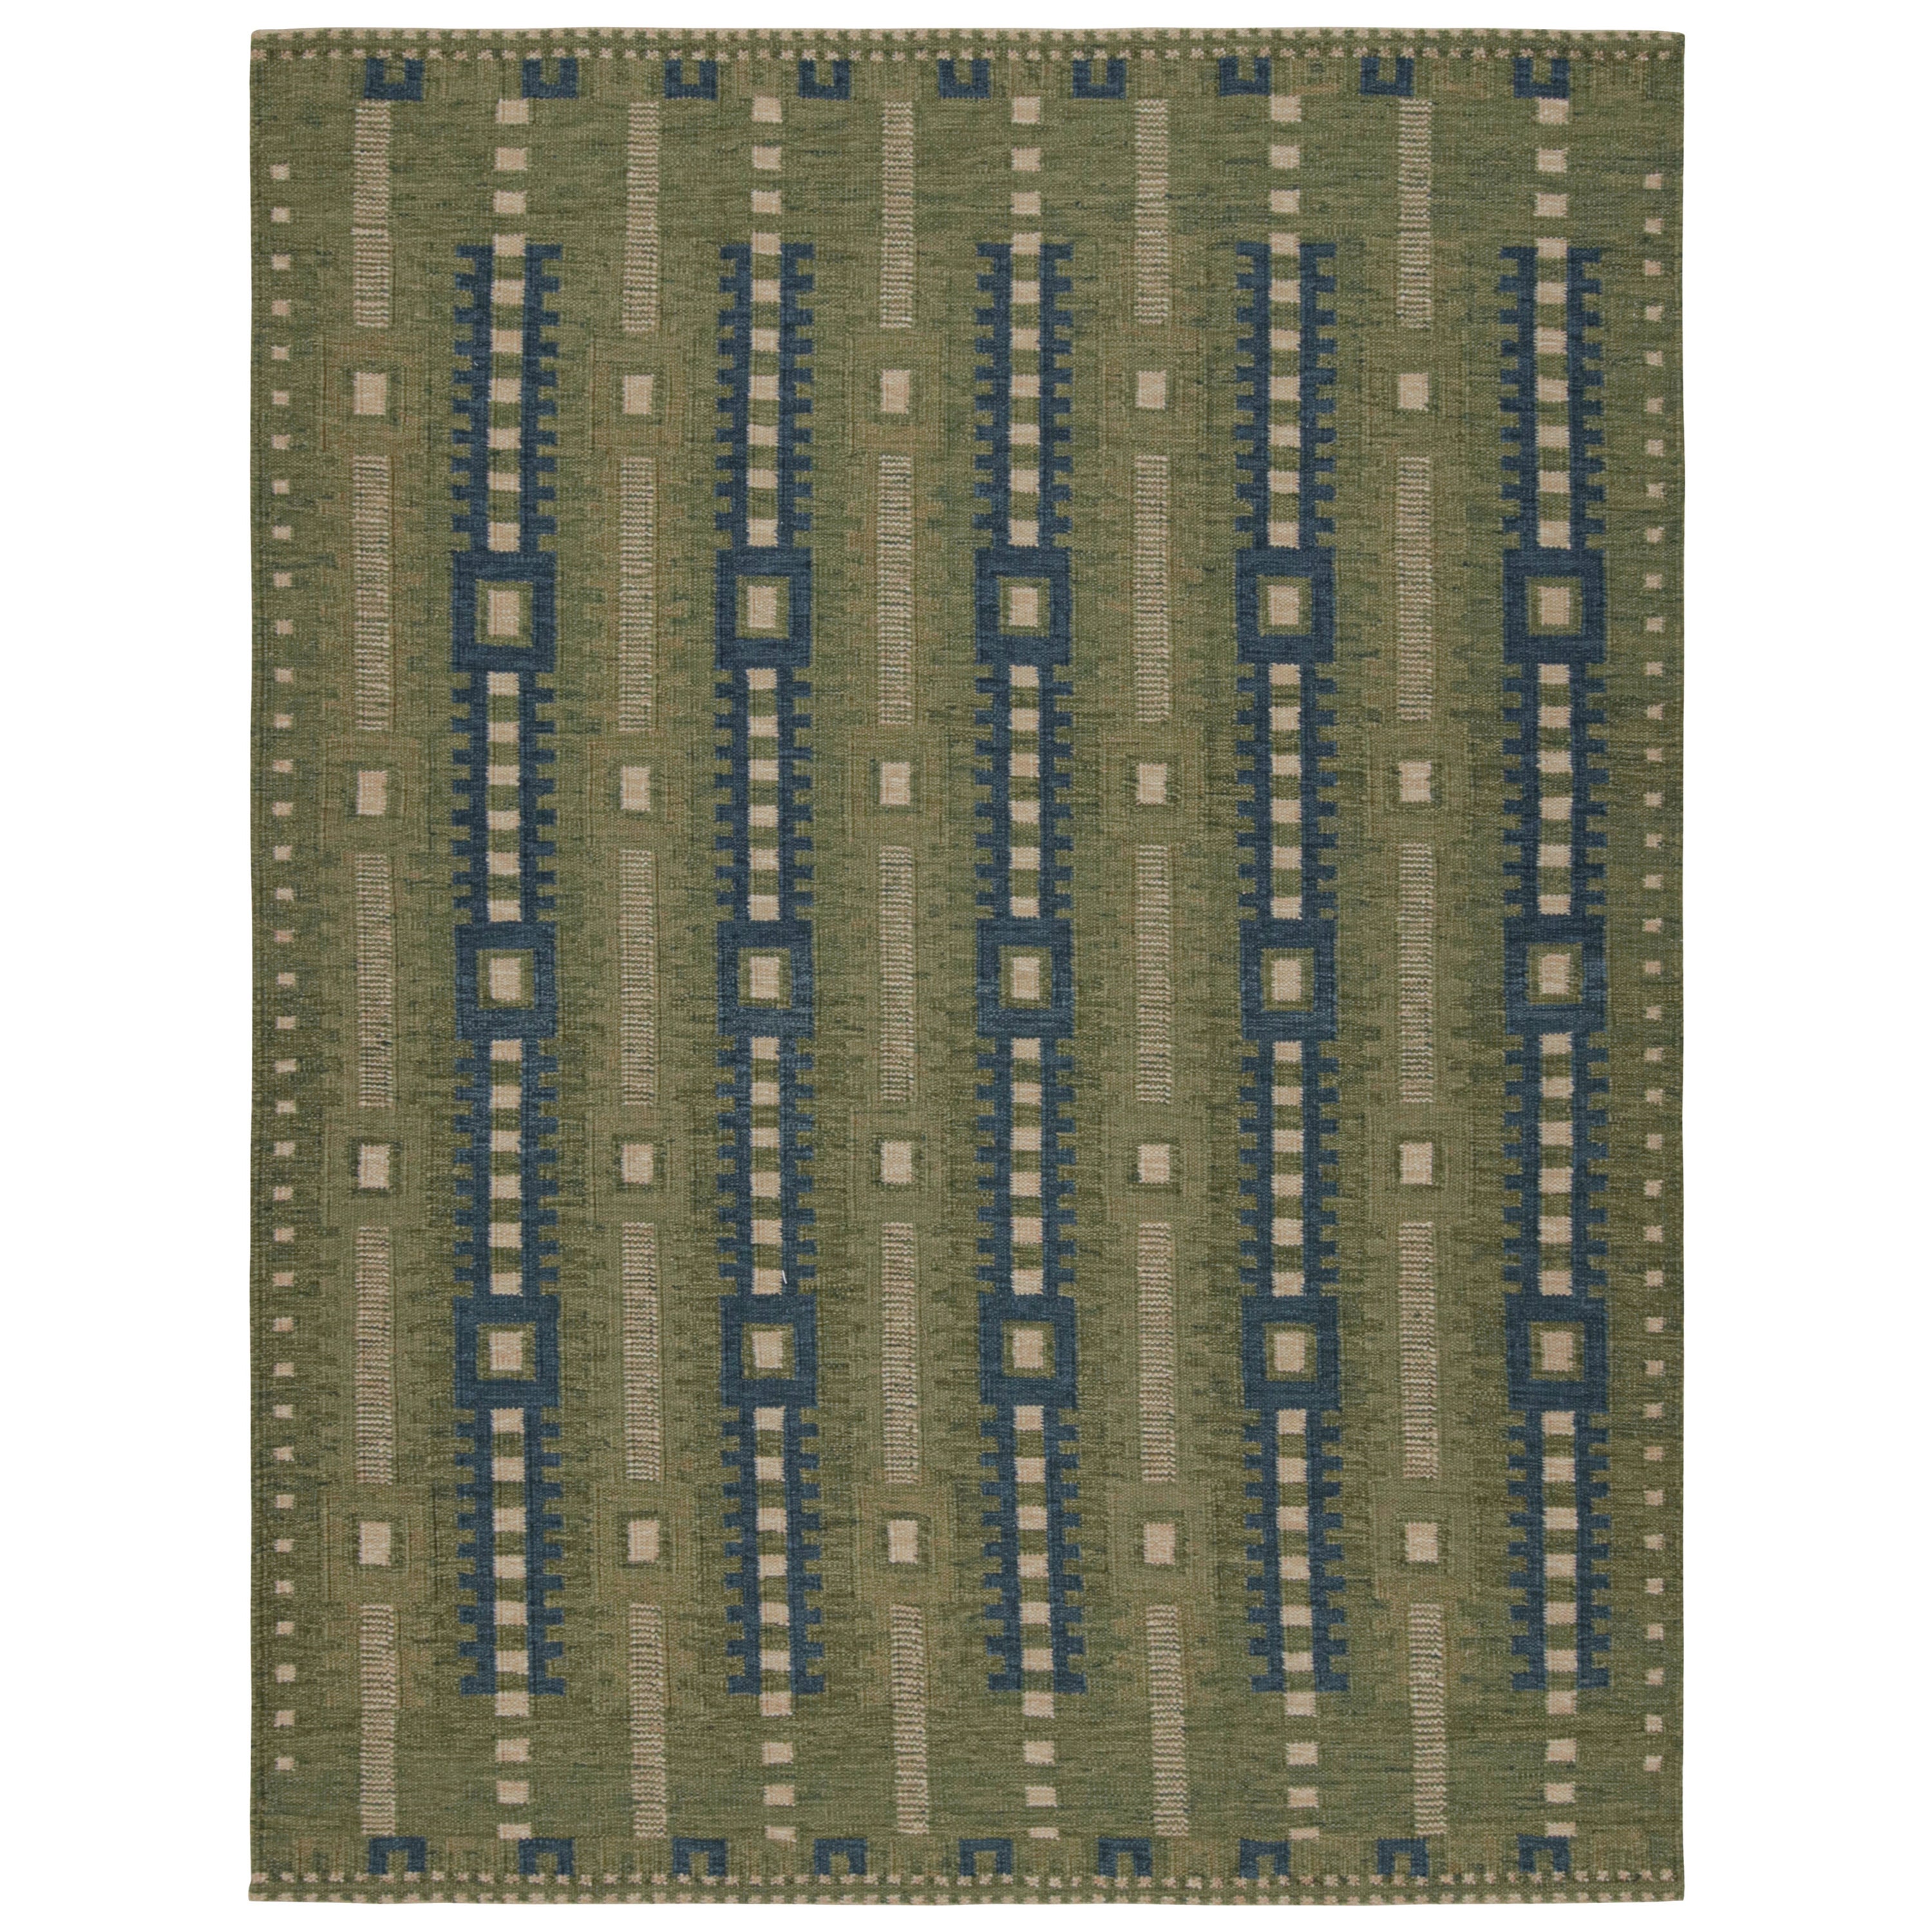 Rug & Kilim's Green Scandinavian Style Custom Rug Design with Geometric Patterns (tapis sur mesure de style scandinave avec motifs géométriques)